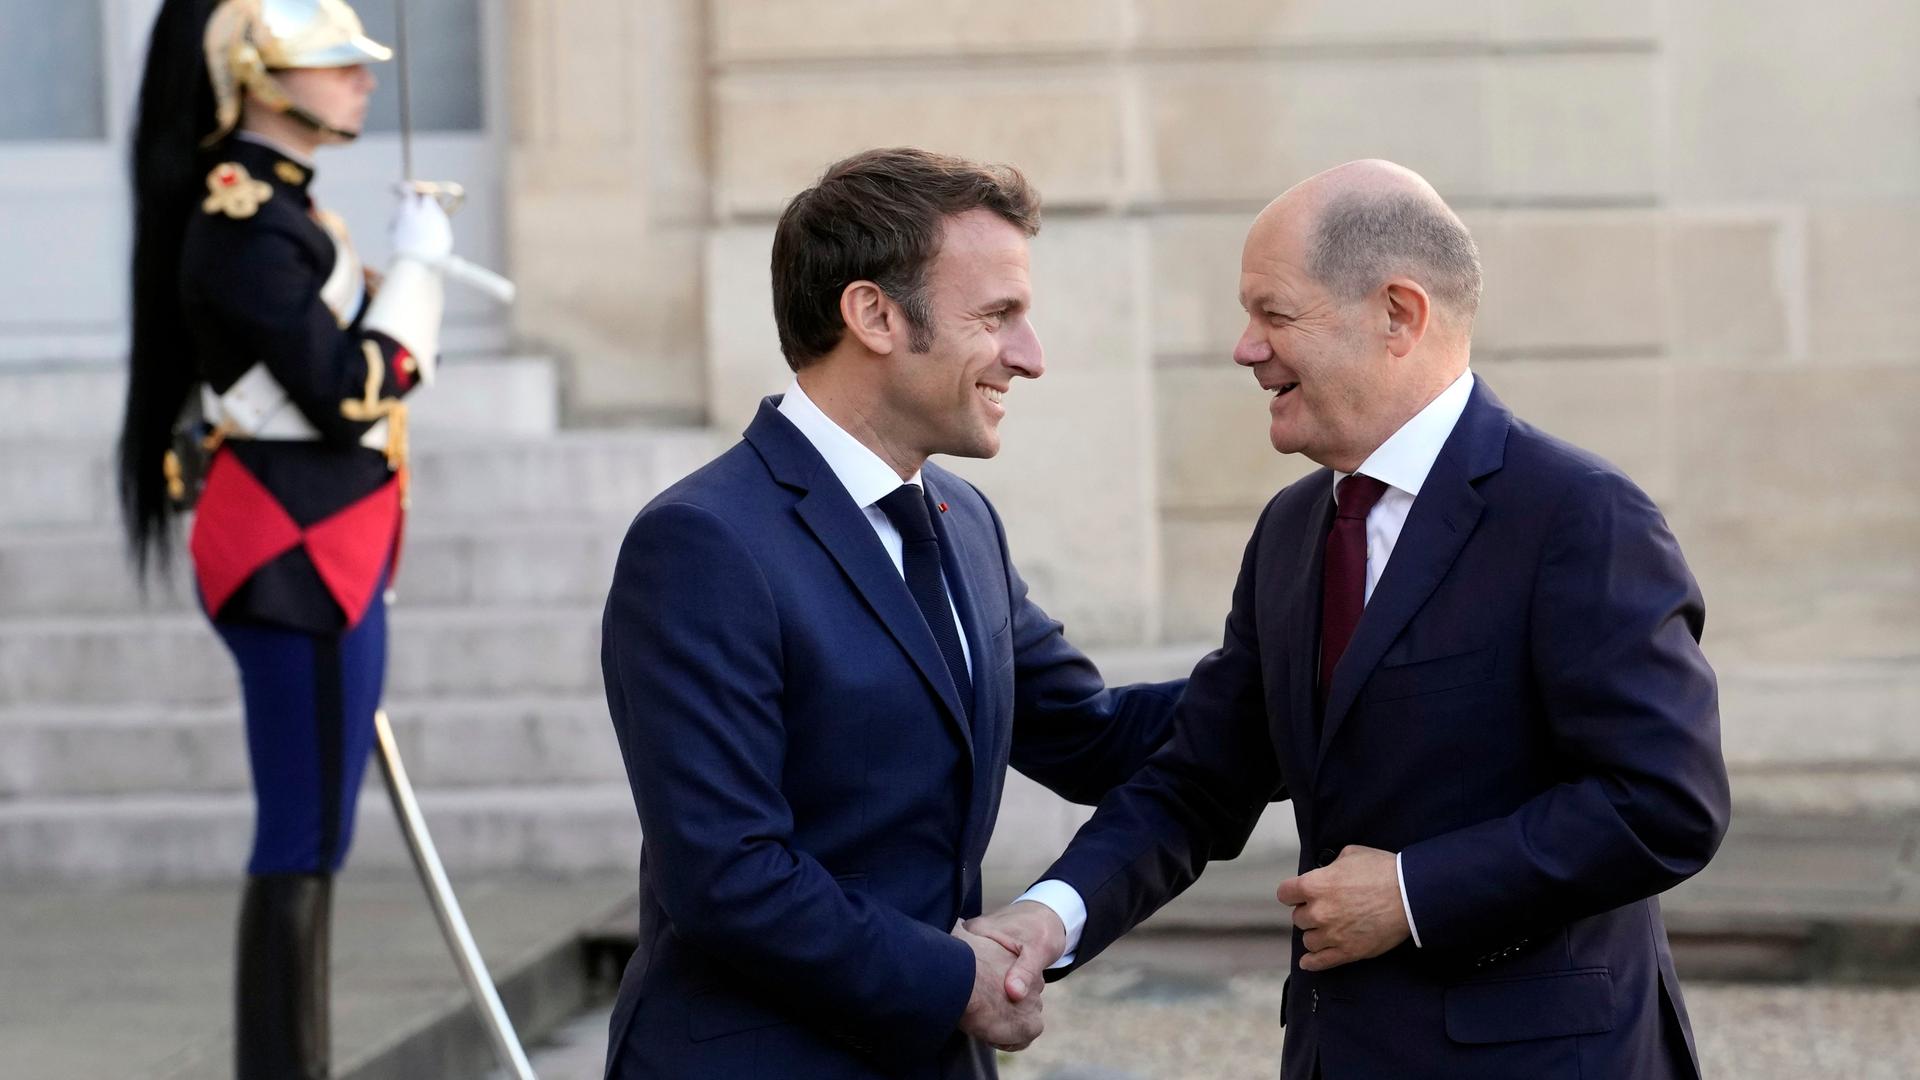 Der Präsident von Frankreich begrüßt den deutschen Bundes-Kanzler mit einem Hand-Schlag. Beide lachen sich an. Im Hinter-Grund steht eine Wache in Uniform.